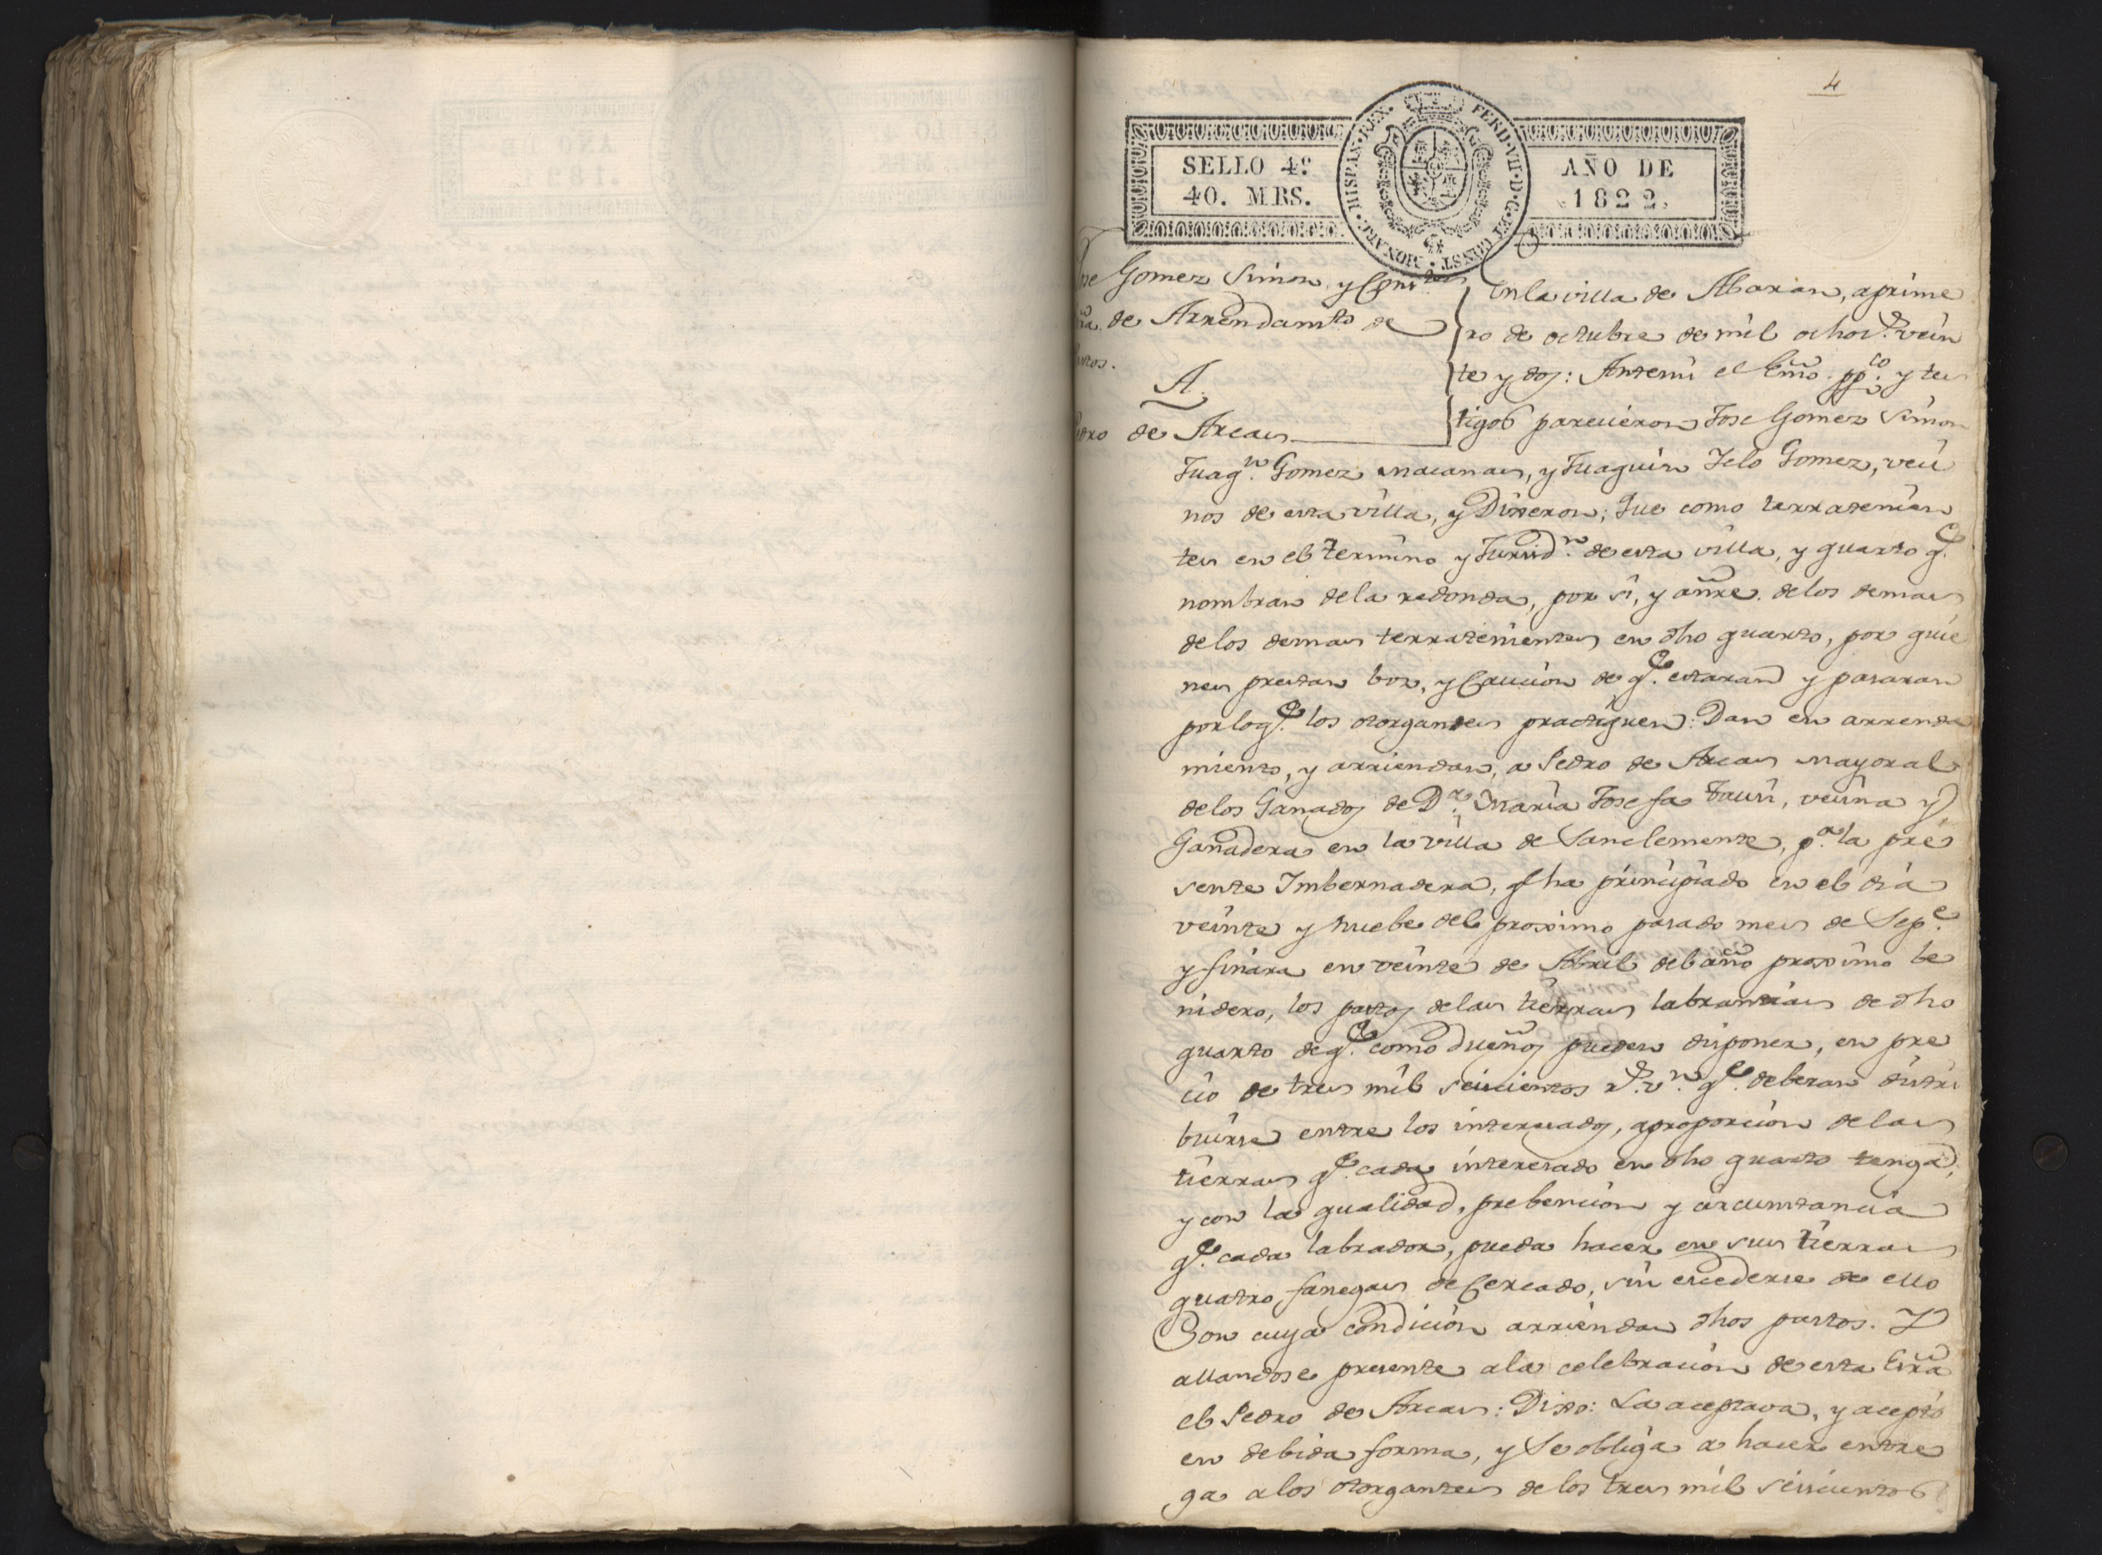 Registro de Antonio Molina Fernández, Juan Marín Ruiz y Mariano Moreno Tornero, Abarán. Años 1820-1823.